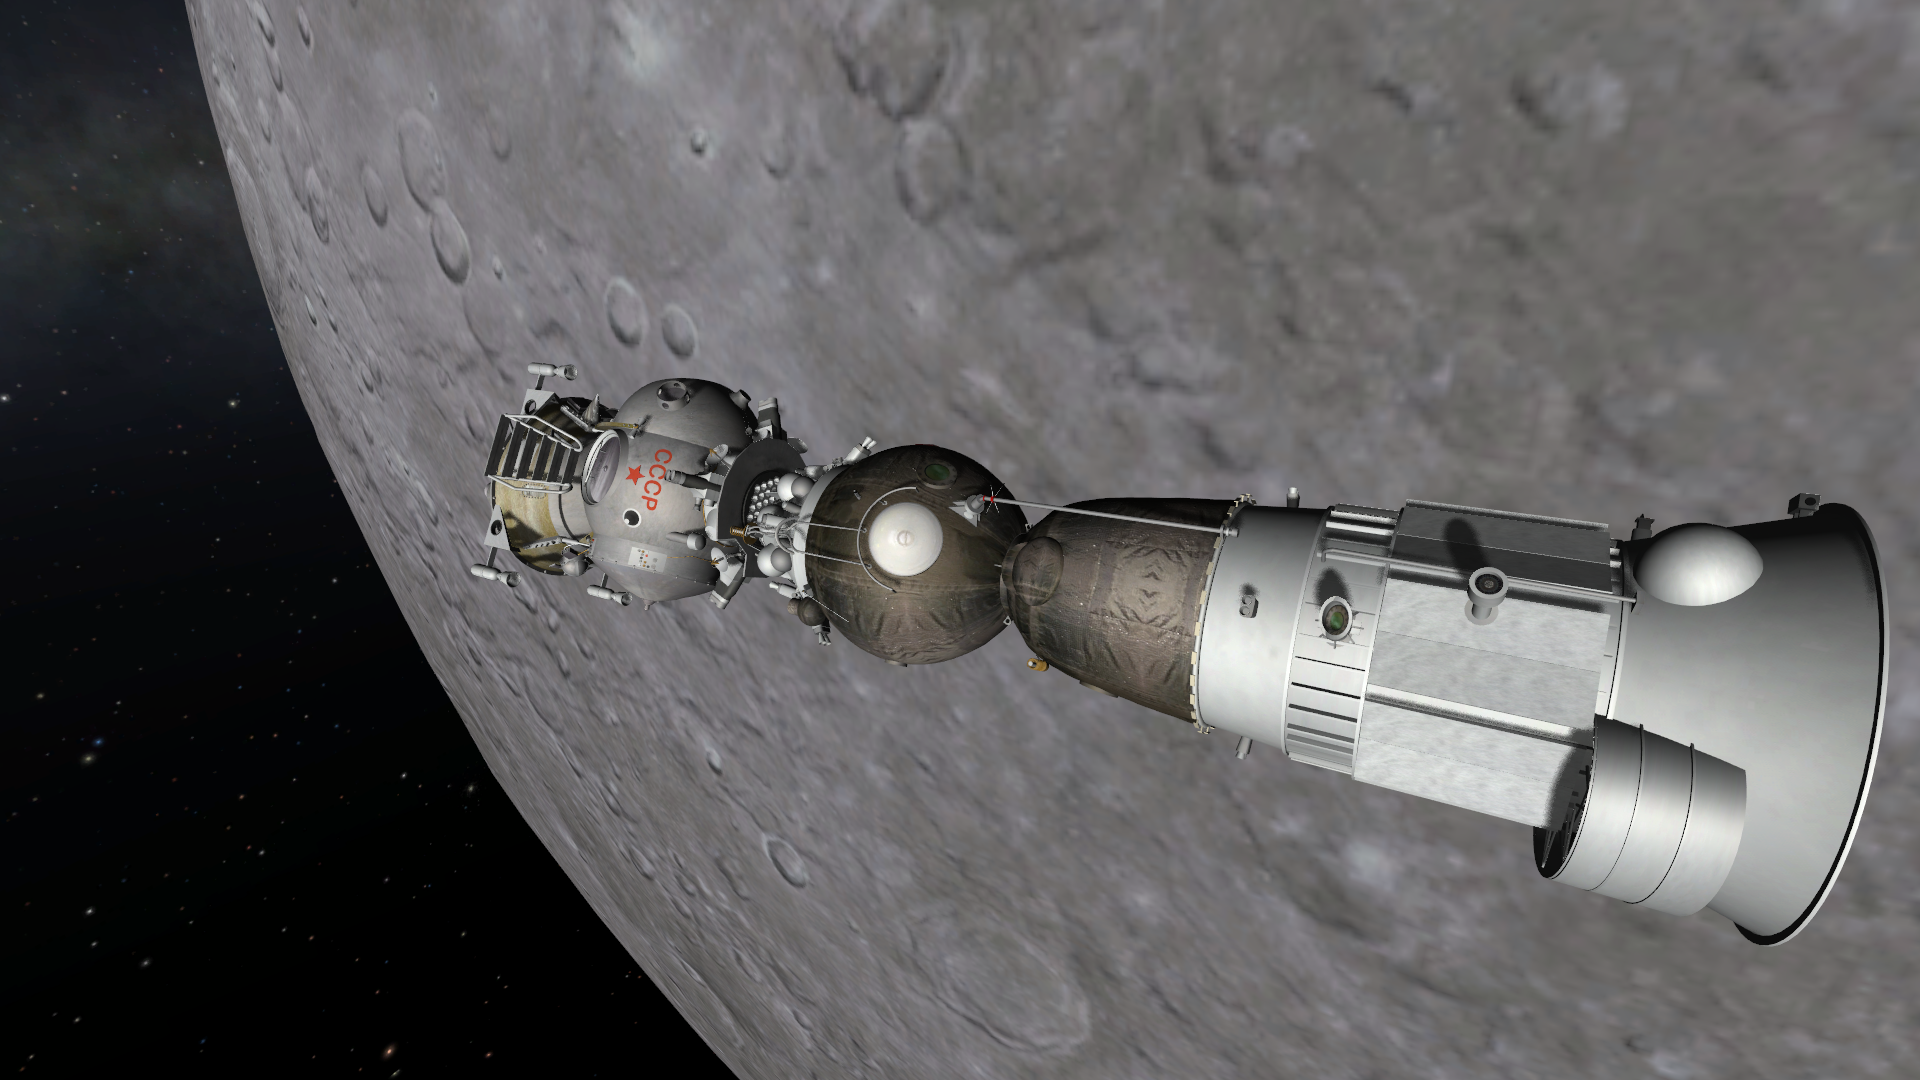 Союз 7к-лок. Космический корабль 7к Союз лок. Лунный орбитальный корабль (лок, 11ф93). Восток-3 пилотируемый космический корабль. 9 м з о л о